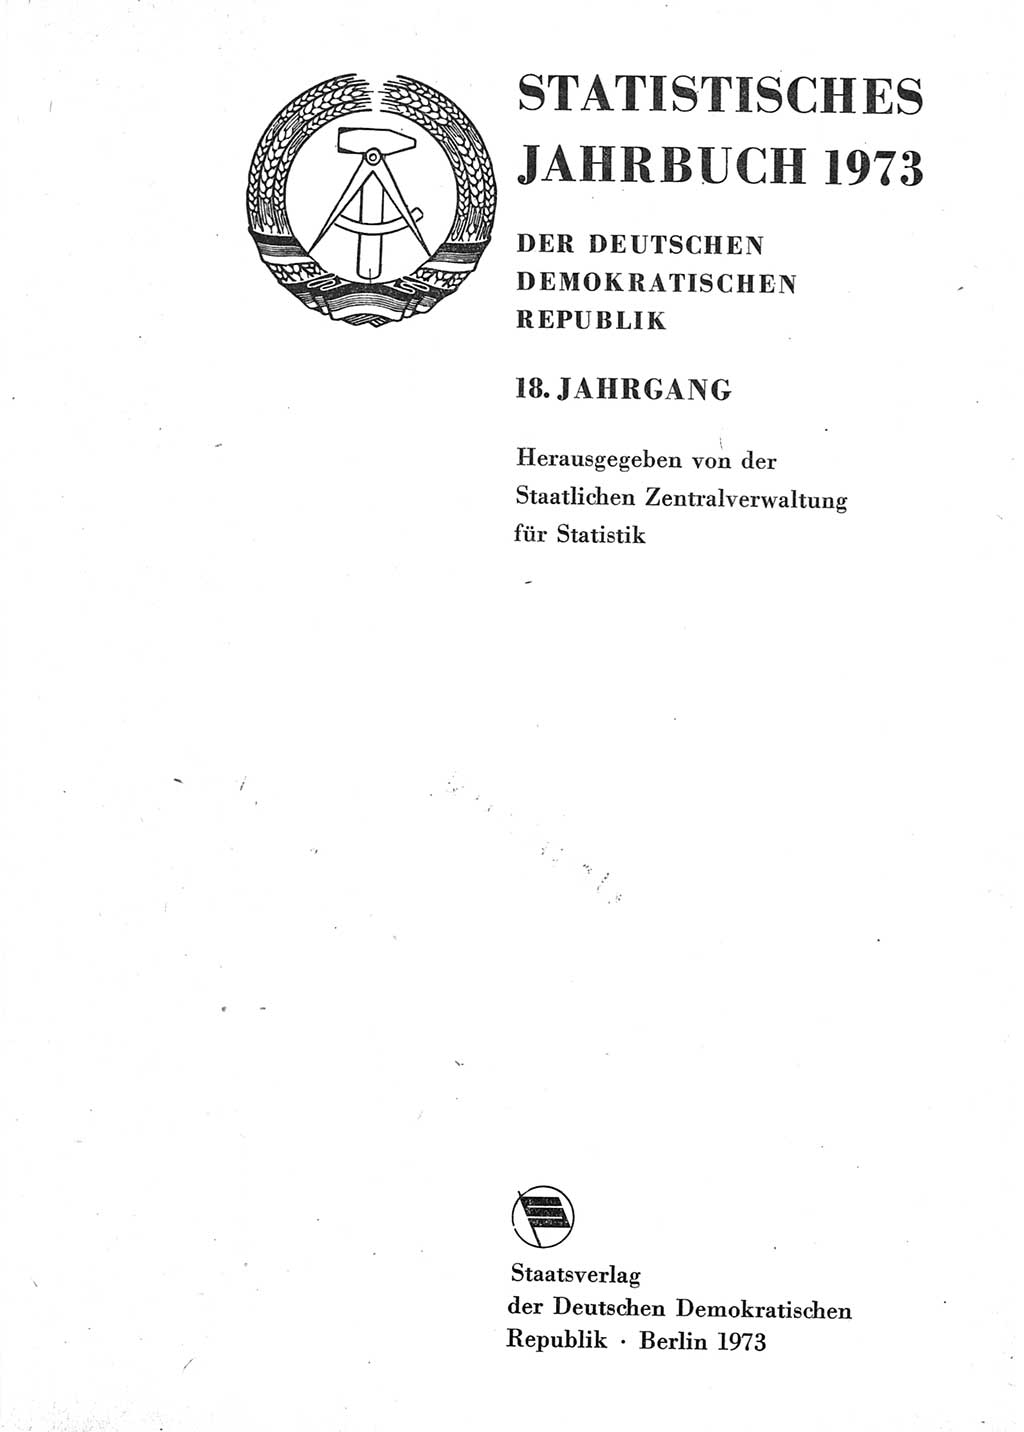 Statistisches Jahrbuch der Deutschen Demokratischen Republik (DDR) 1973, Seite 1 (Stat. Jb. DDR 1973, S. 1)